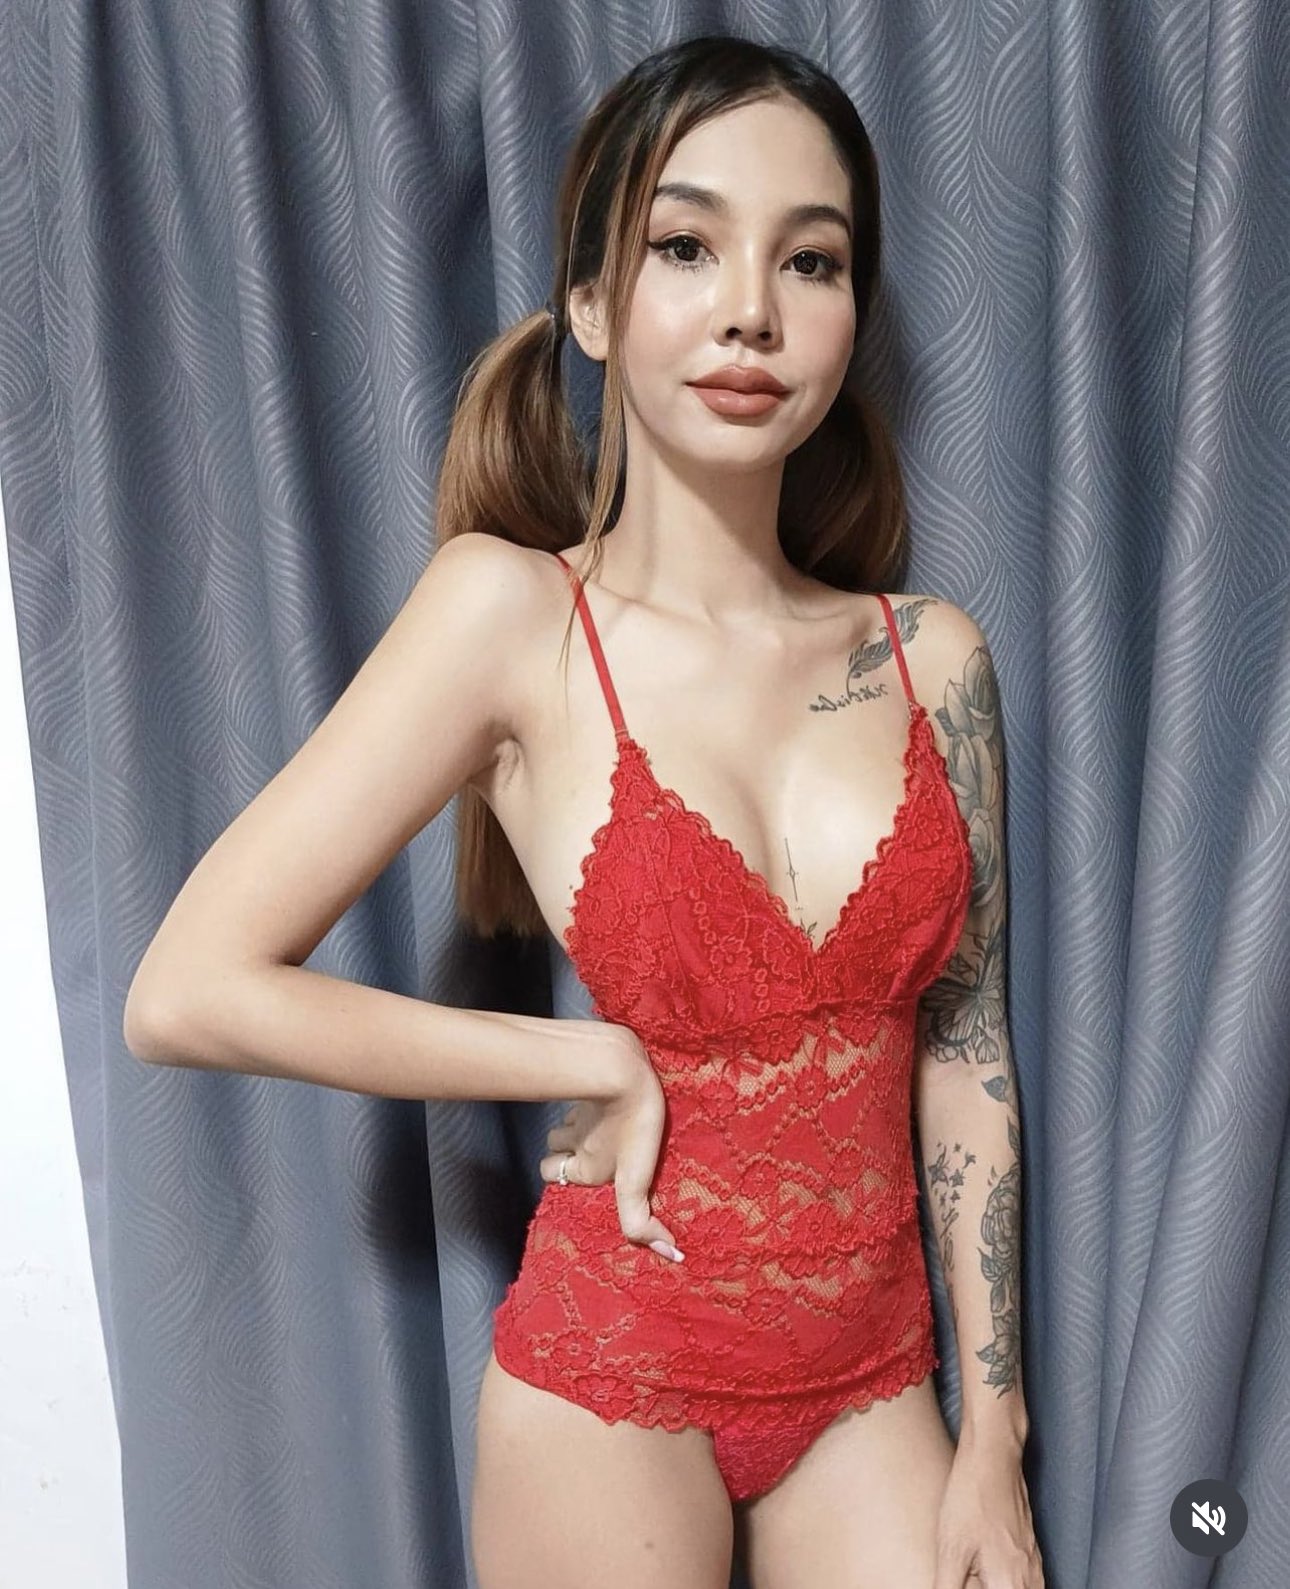 Thai Girl From Online